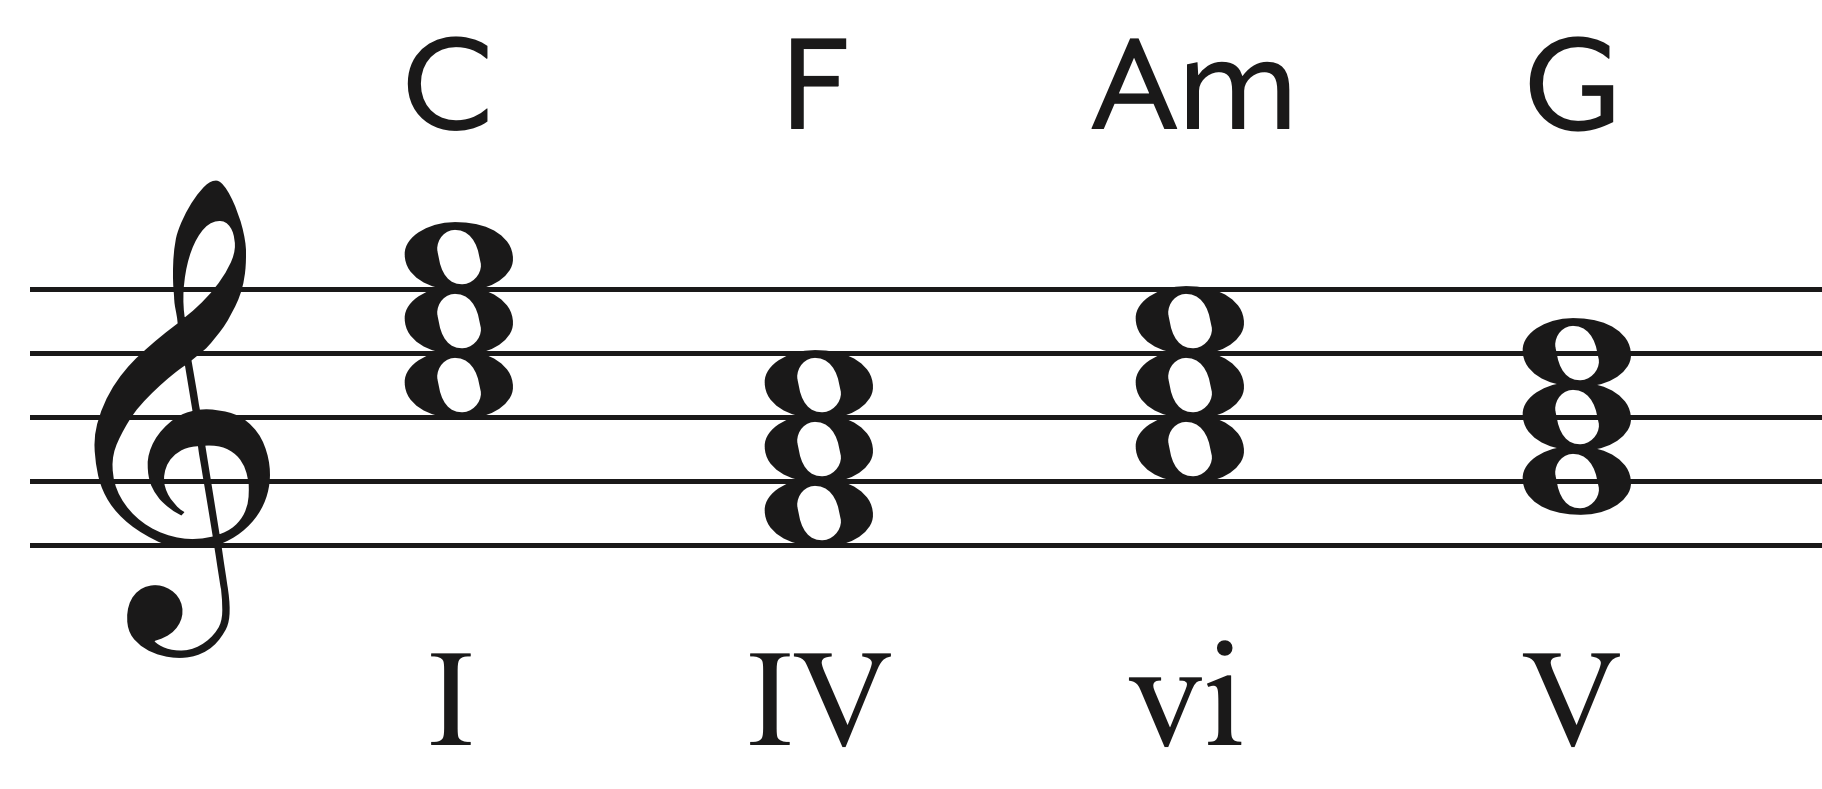 The C-F-Am-G chord progression